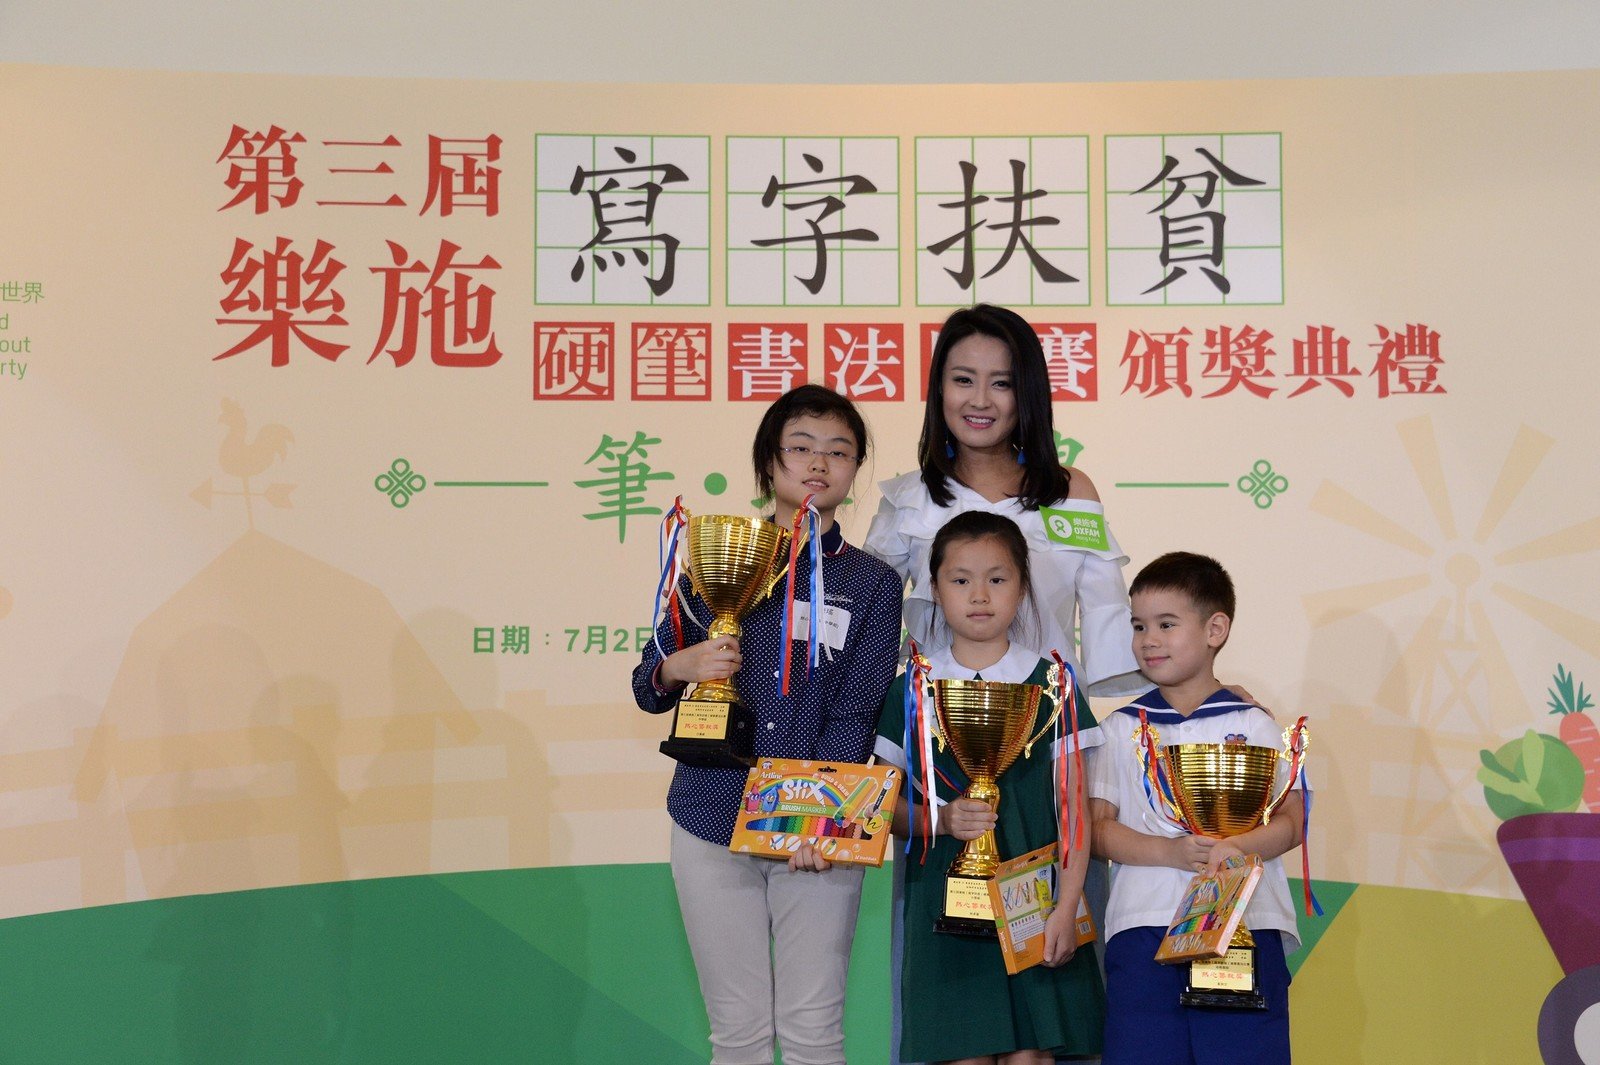 演艺名人陈倩扬颁发筹款奖予今次活动热心筹款的同学们。